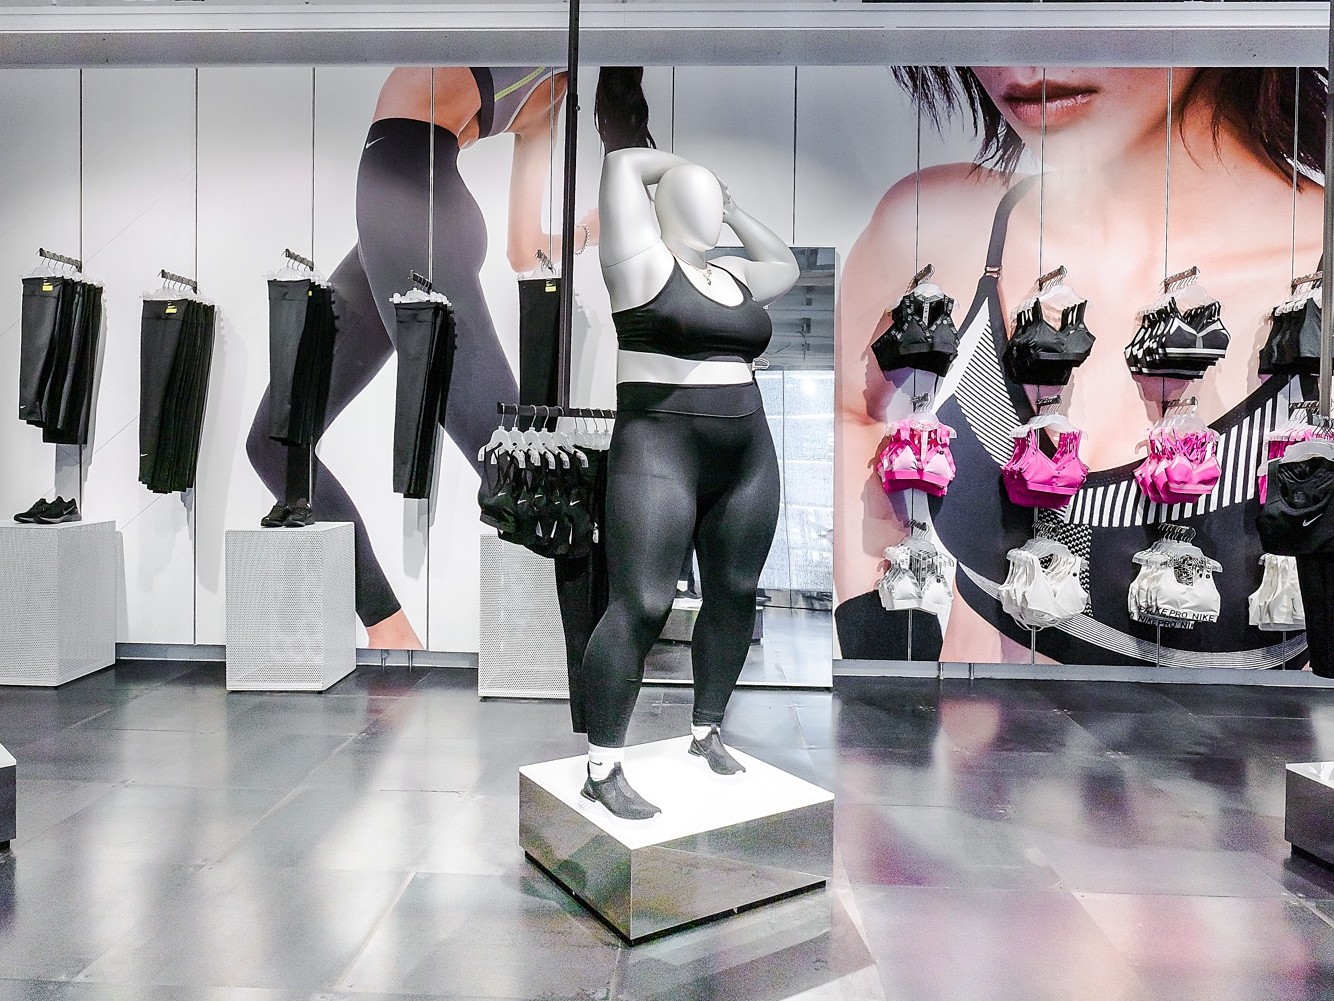 Ervaren persoon Graden Celsius hooi Nike's controversial plus-size mannequin is a brilliant business decision